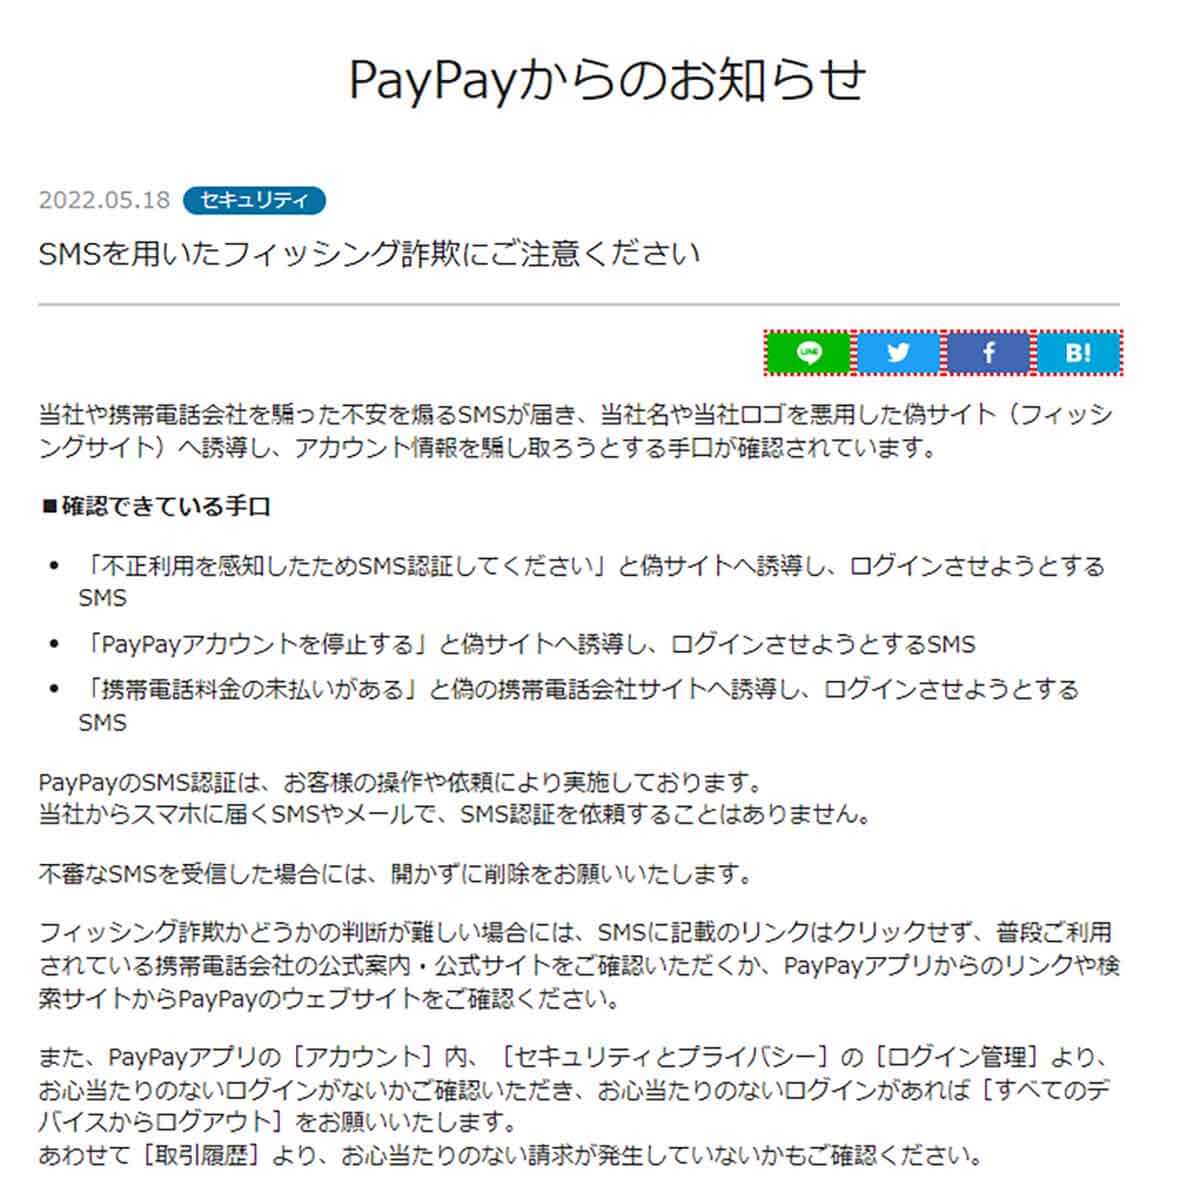 PayPayからのお知らせ「SMSを用いたフィッシング詐欺にご注意ください」